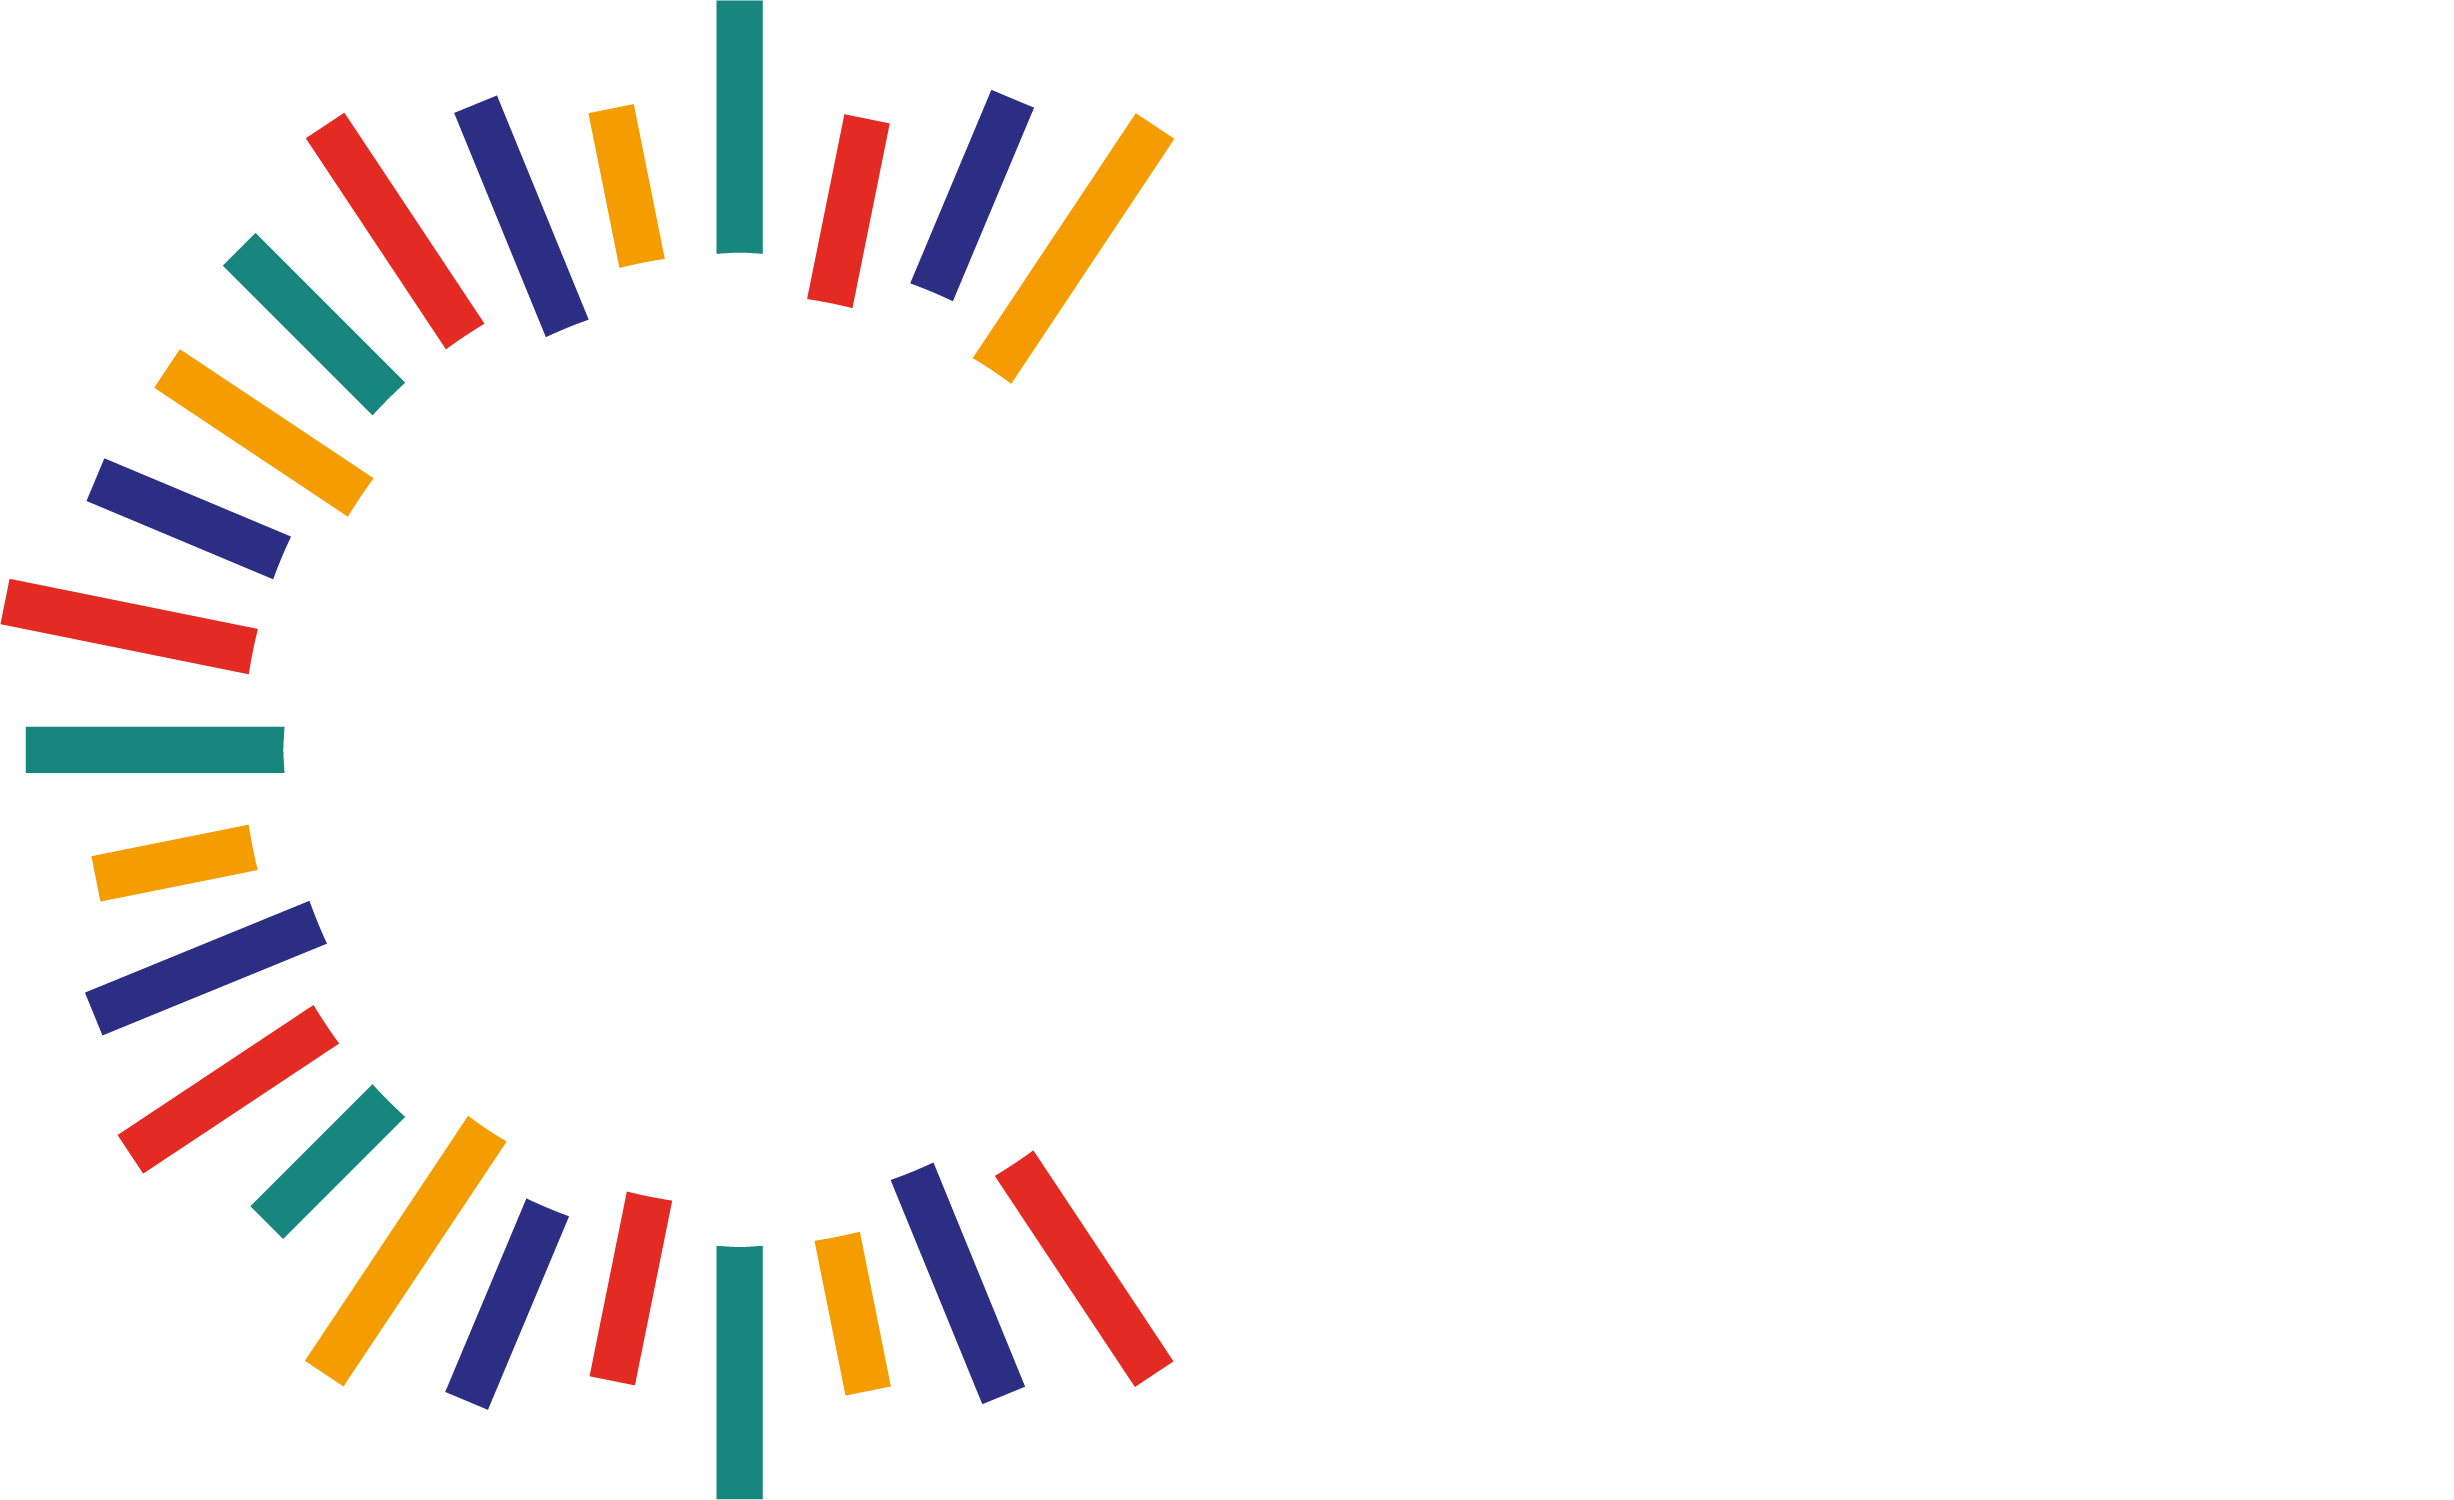 Inclusiv'Day 2022